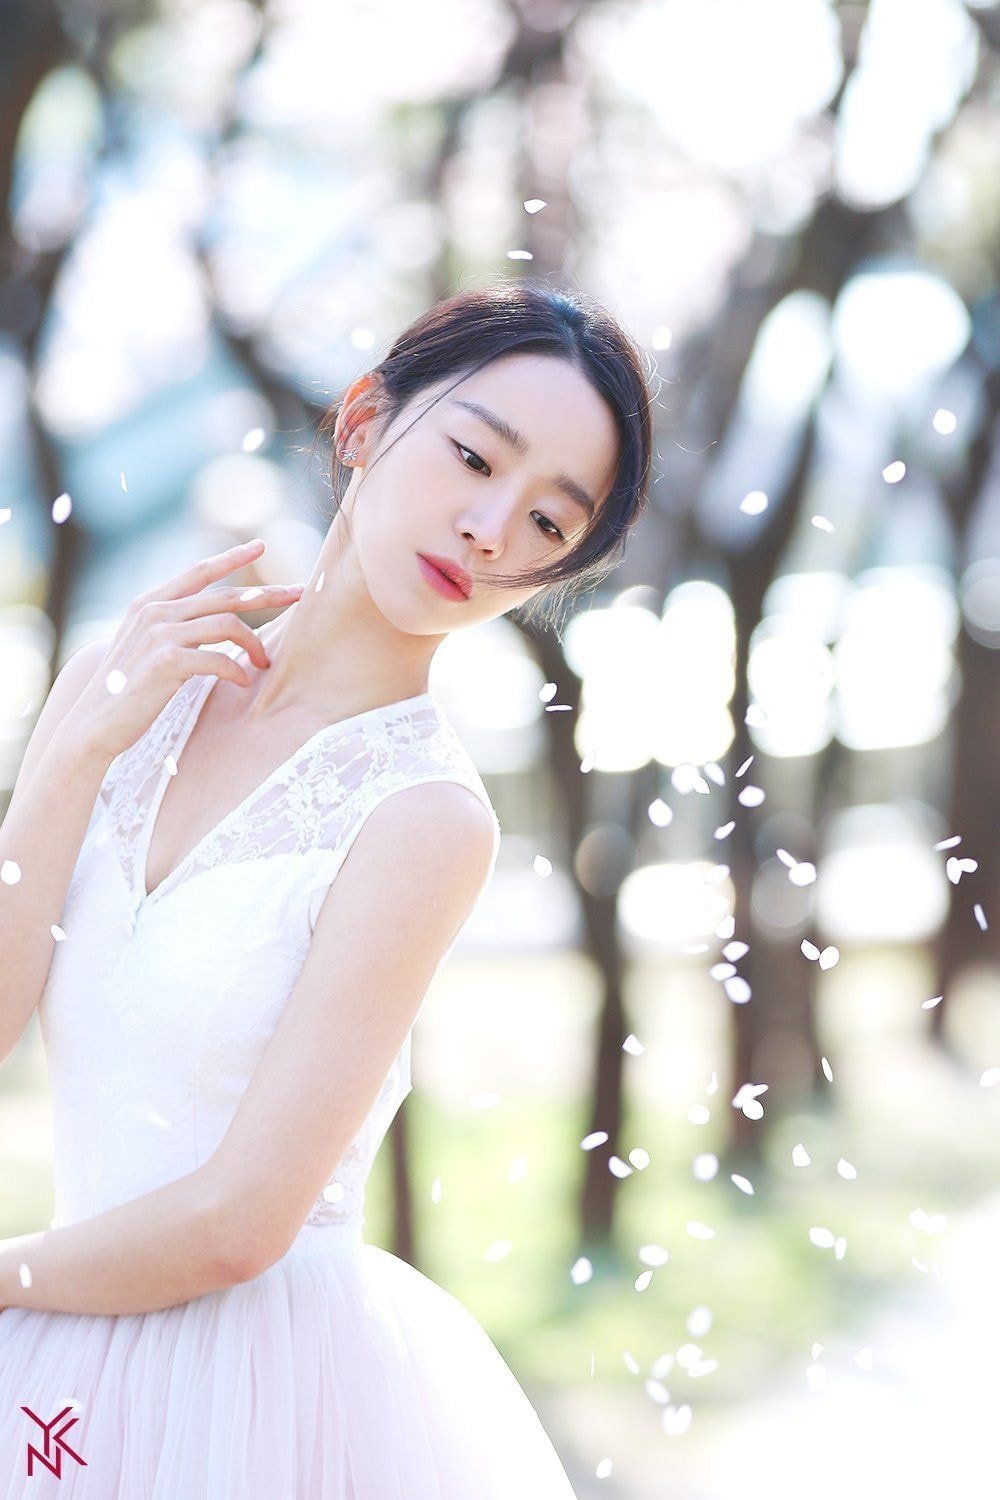 Song Hye Kyo và khoảnh khắc cực đẹp của mỹ nhân Hàn dưới trời tuyết 